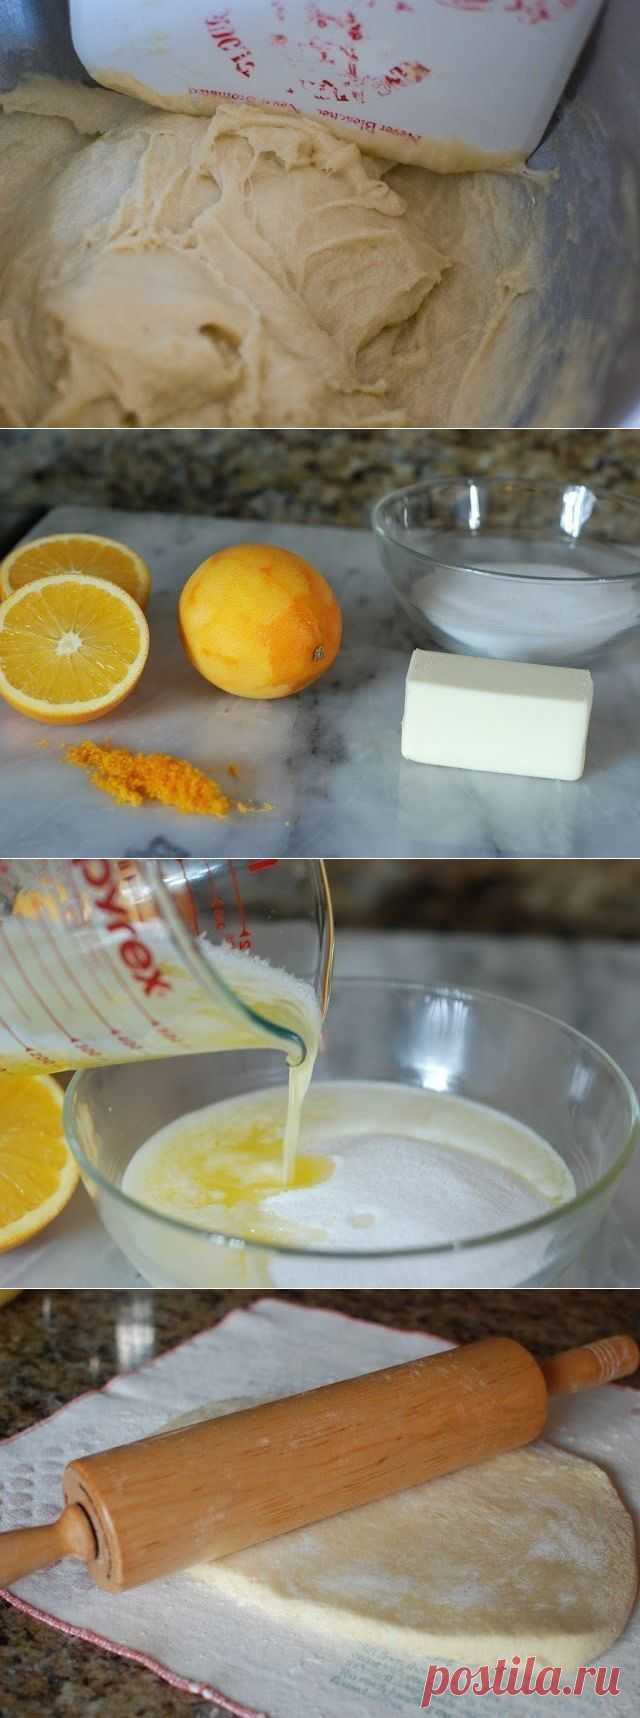 Как приготовить апельсиновые булочки - рецепт, ингридиенты и фотографии